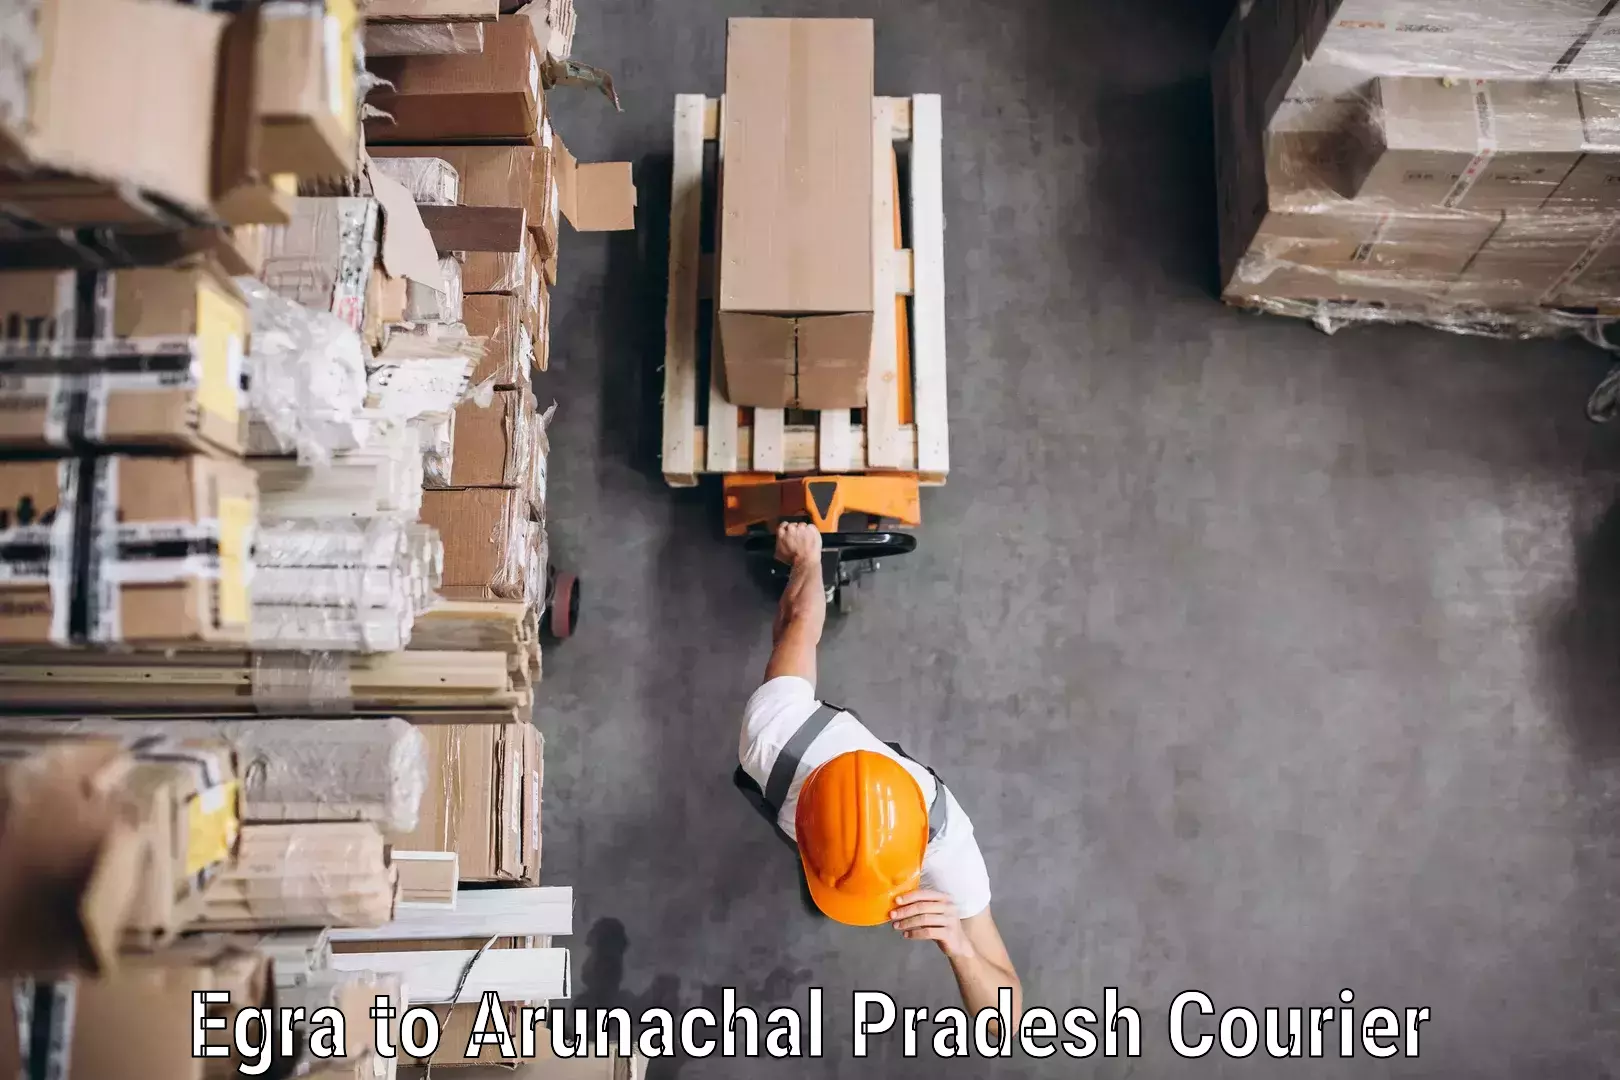 Efficient parcel tracking Egra to Arunachal Pradesh